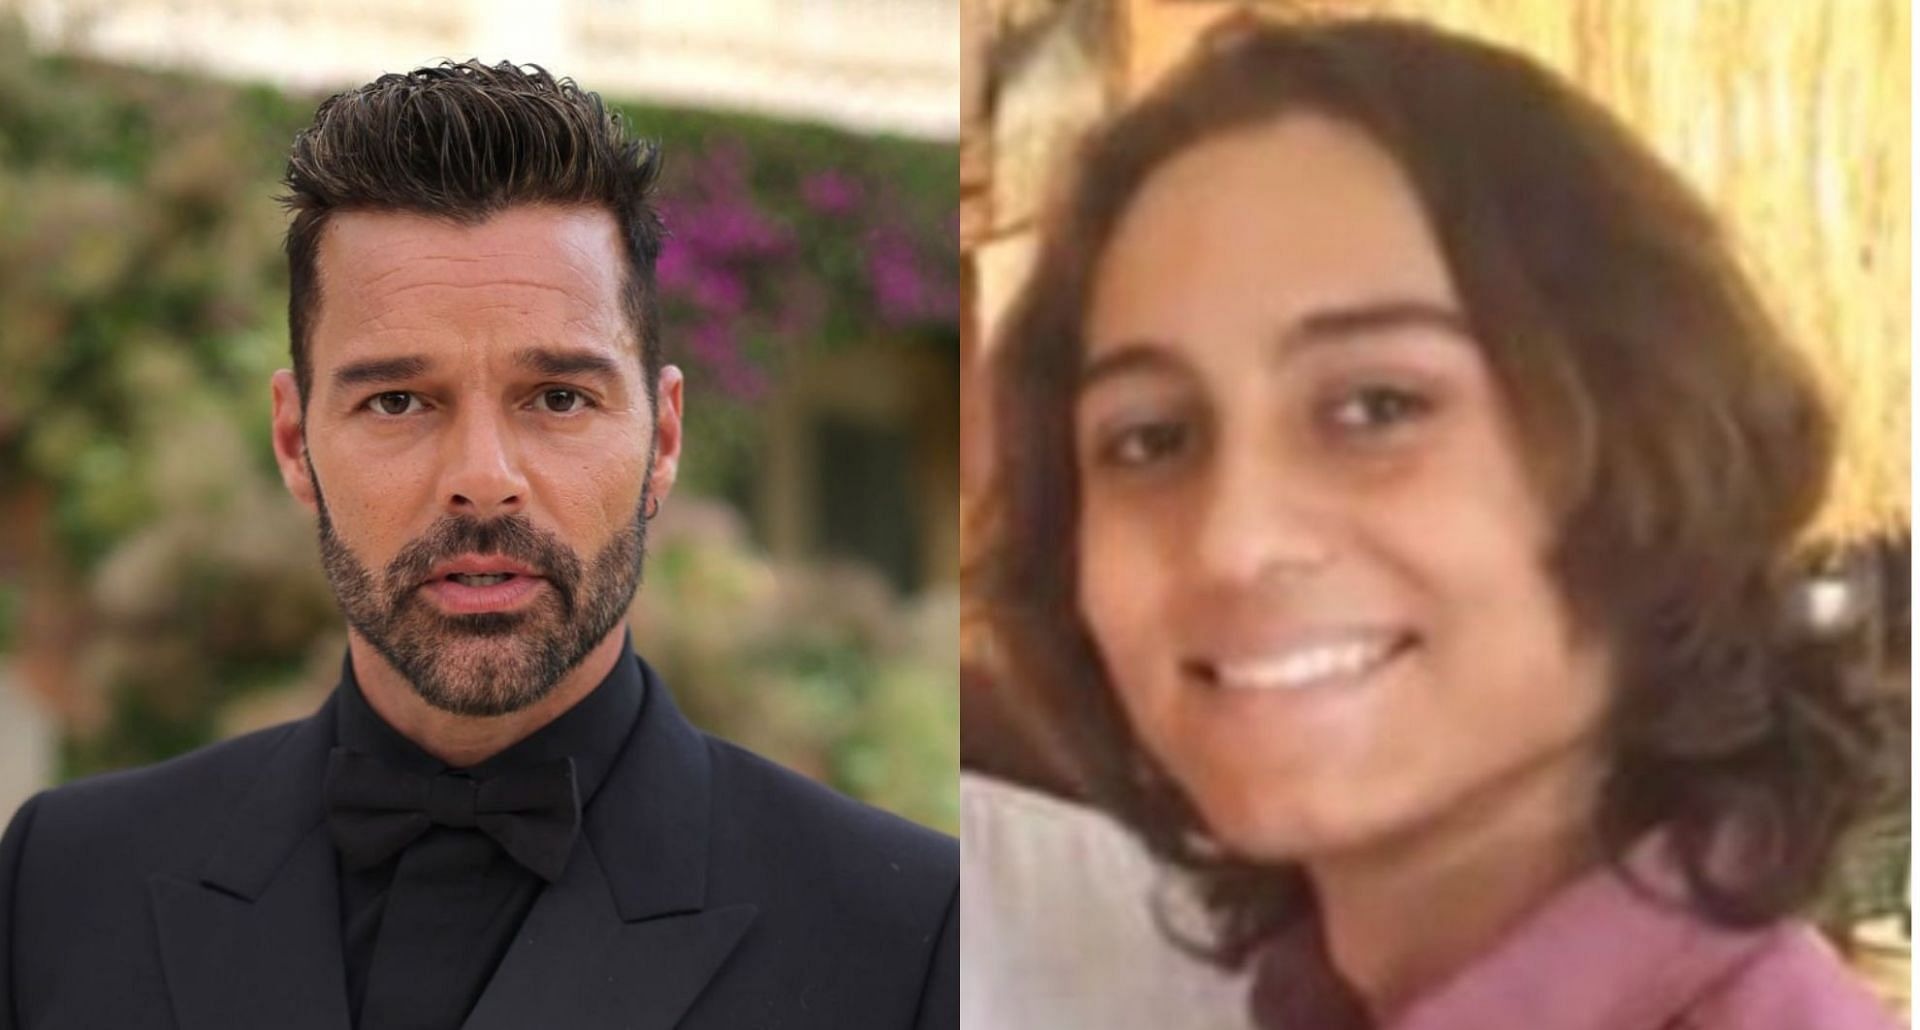 Fiscalía de San Juan no encontró causa para formular cargos de agresión sexual contra Ricky Martin. Fuente: AFP/Facebook